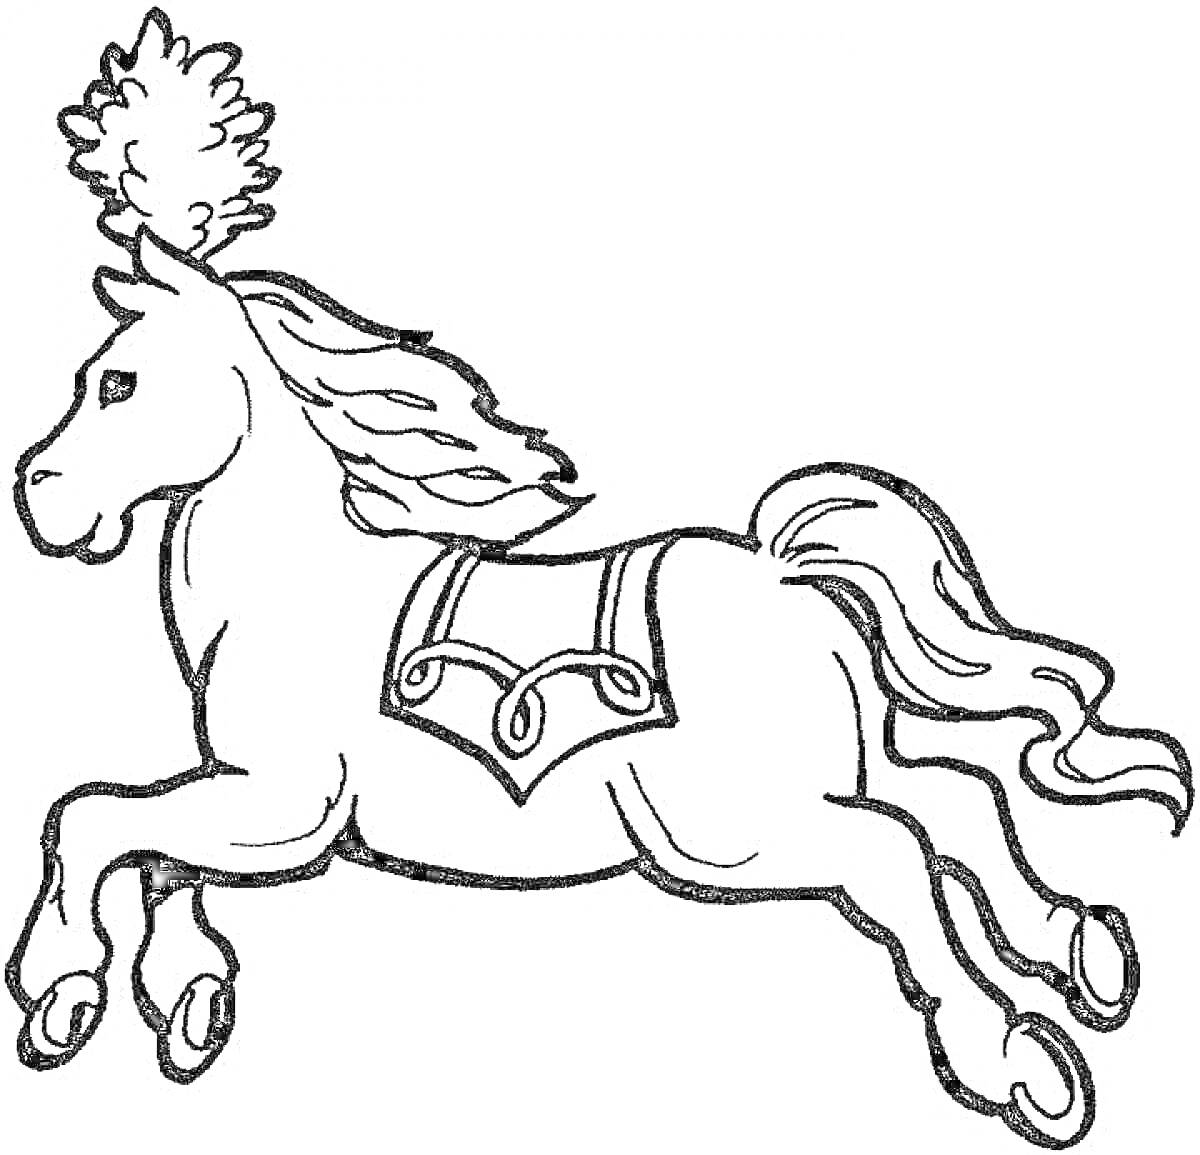 Раскраска Лошадь с перьями на голове и украшенной попоной, прыгающая